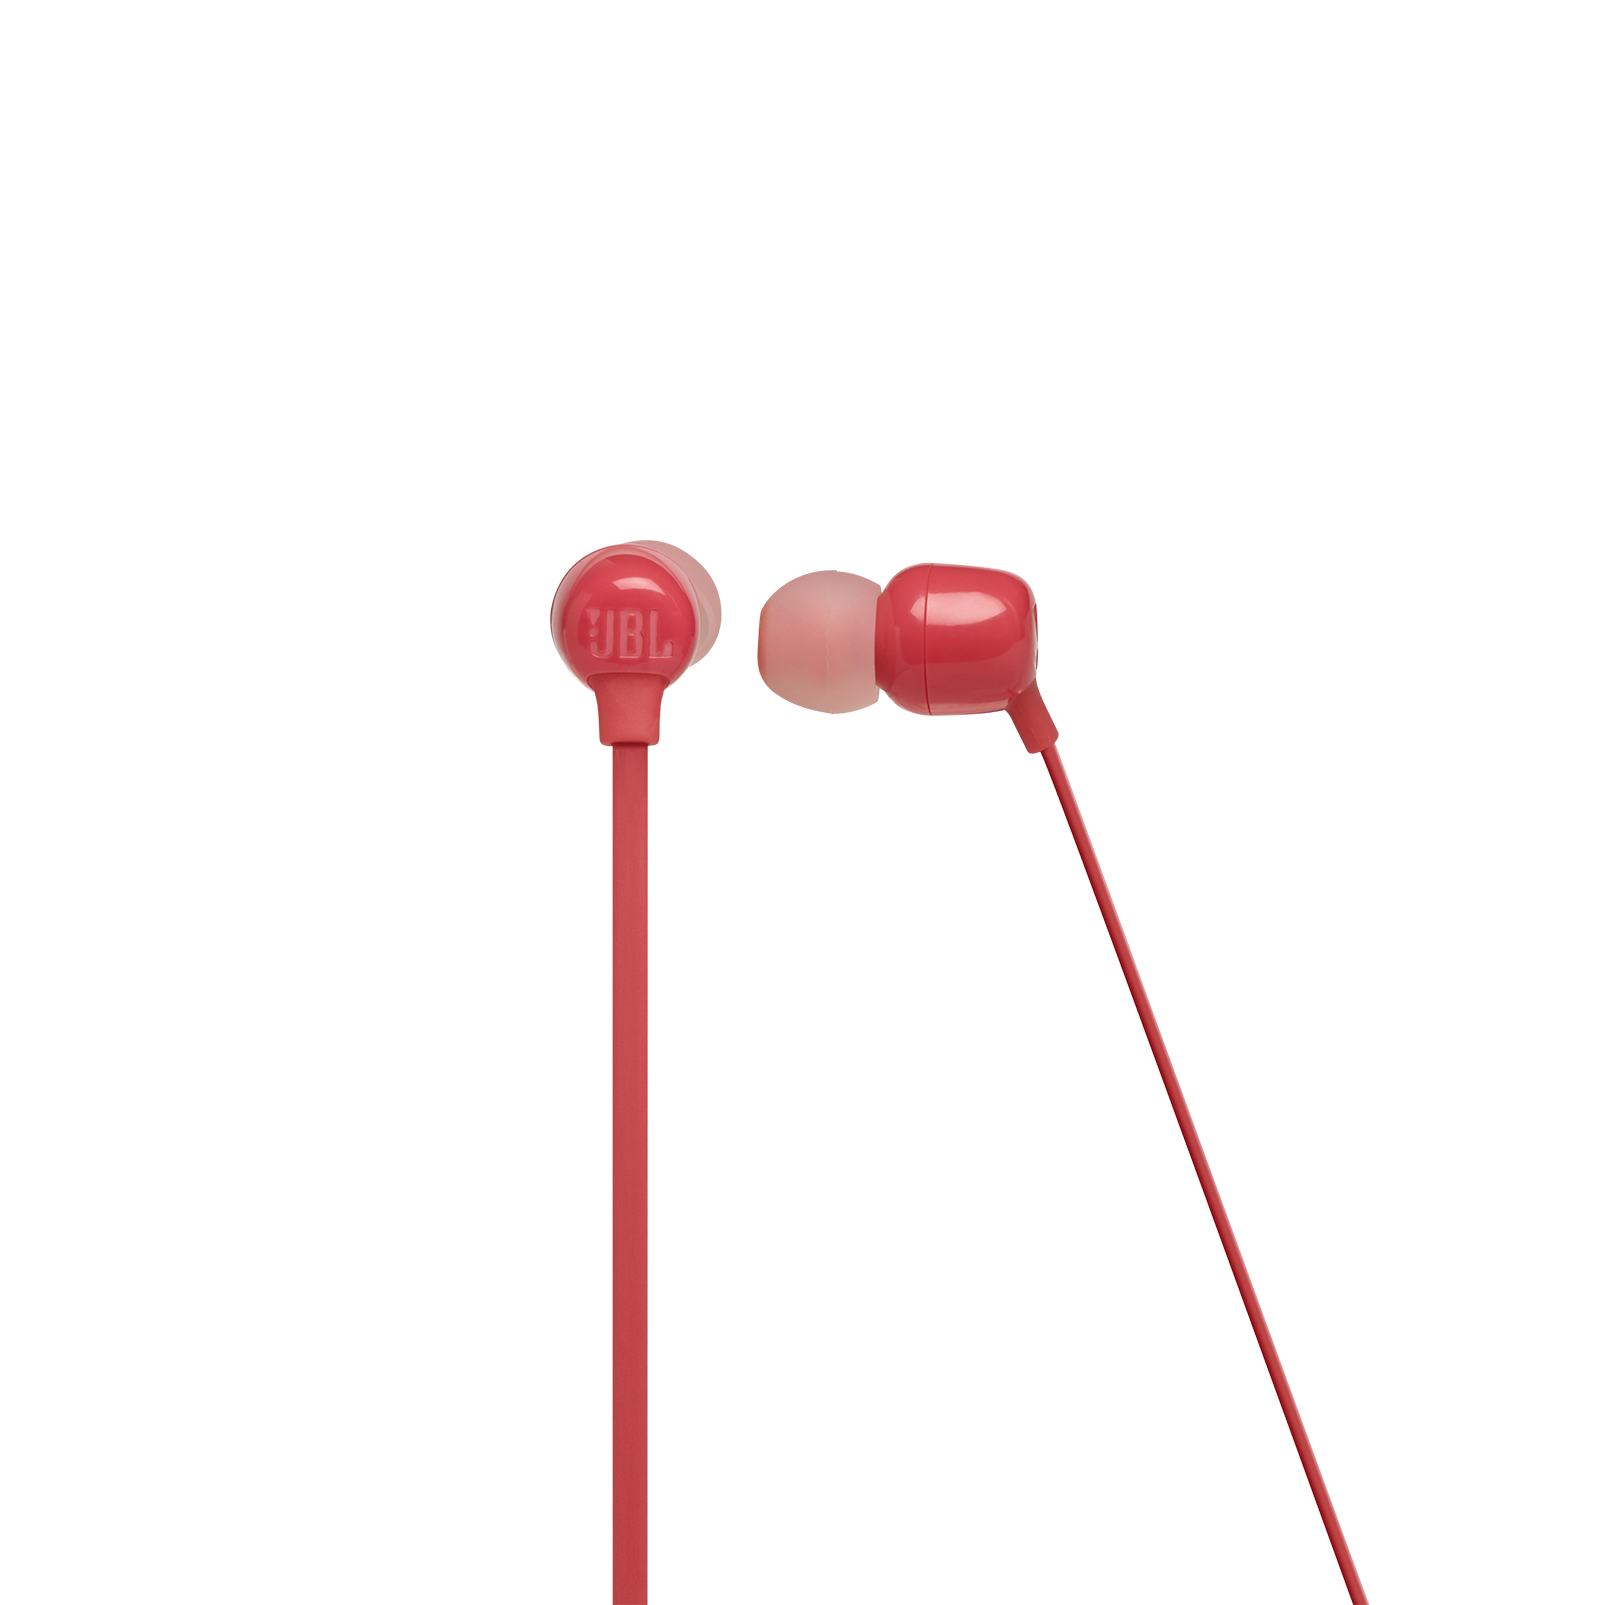 JBL Tune 115BT - Coral Orange - Wireless In-Ear headphones - Front